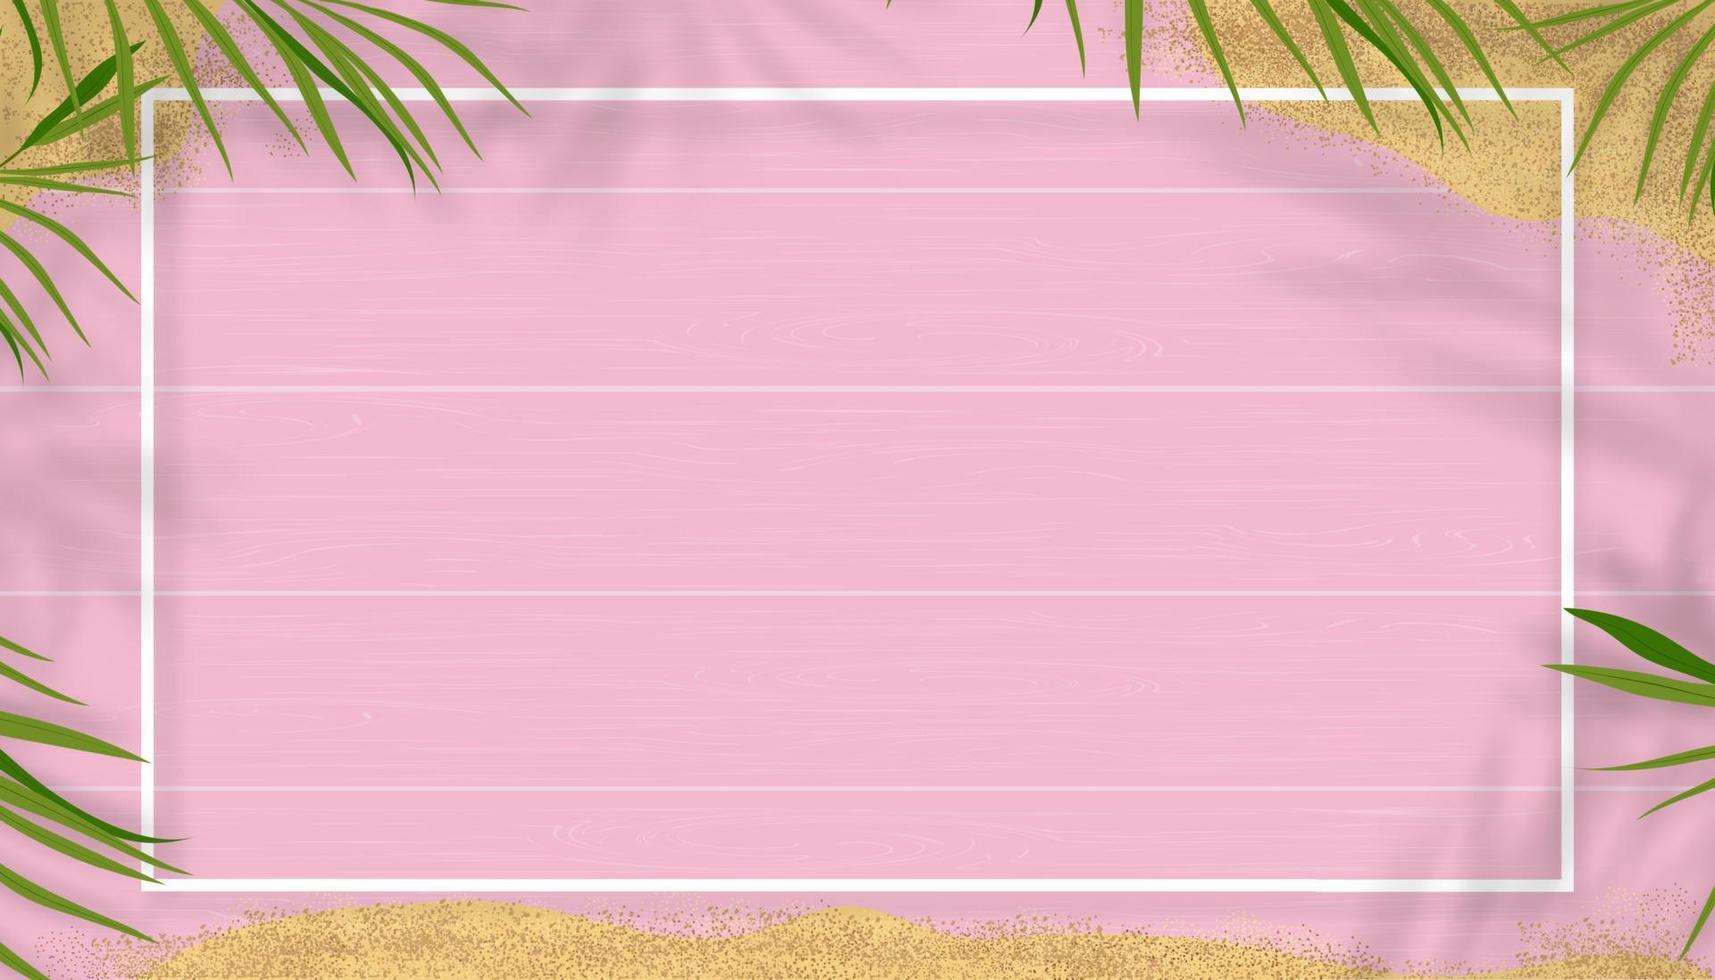 Hallo zomer met groene natuur tropisch palmblad met schaduw op roze houten achtergrond voor reizen, vakantie concept.top view zomer banner achtergrond met kopie ruimte voor addvertise, verkoop promotie vector